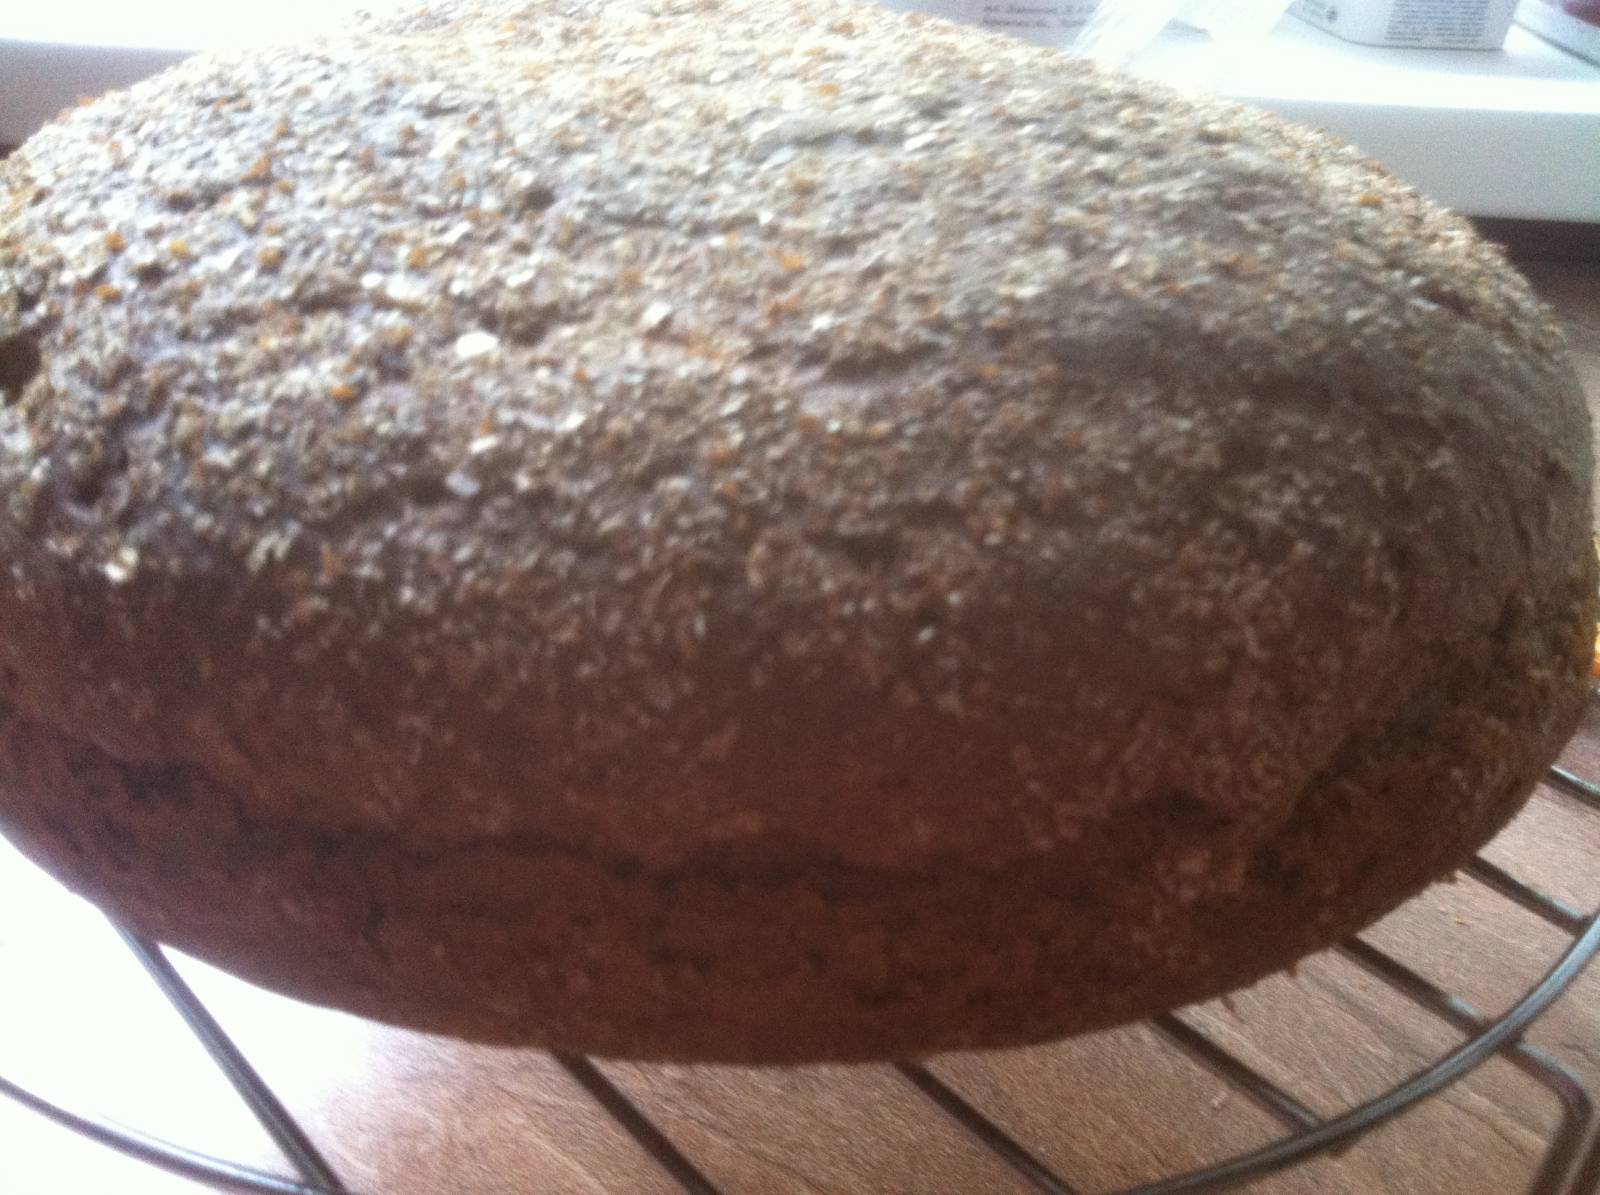 Pan de centeno y trigo sobre una masa de kvas seco (horno)